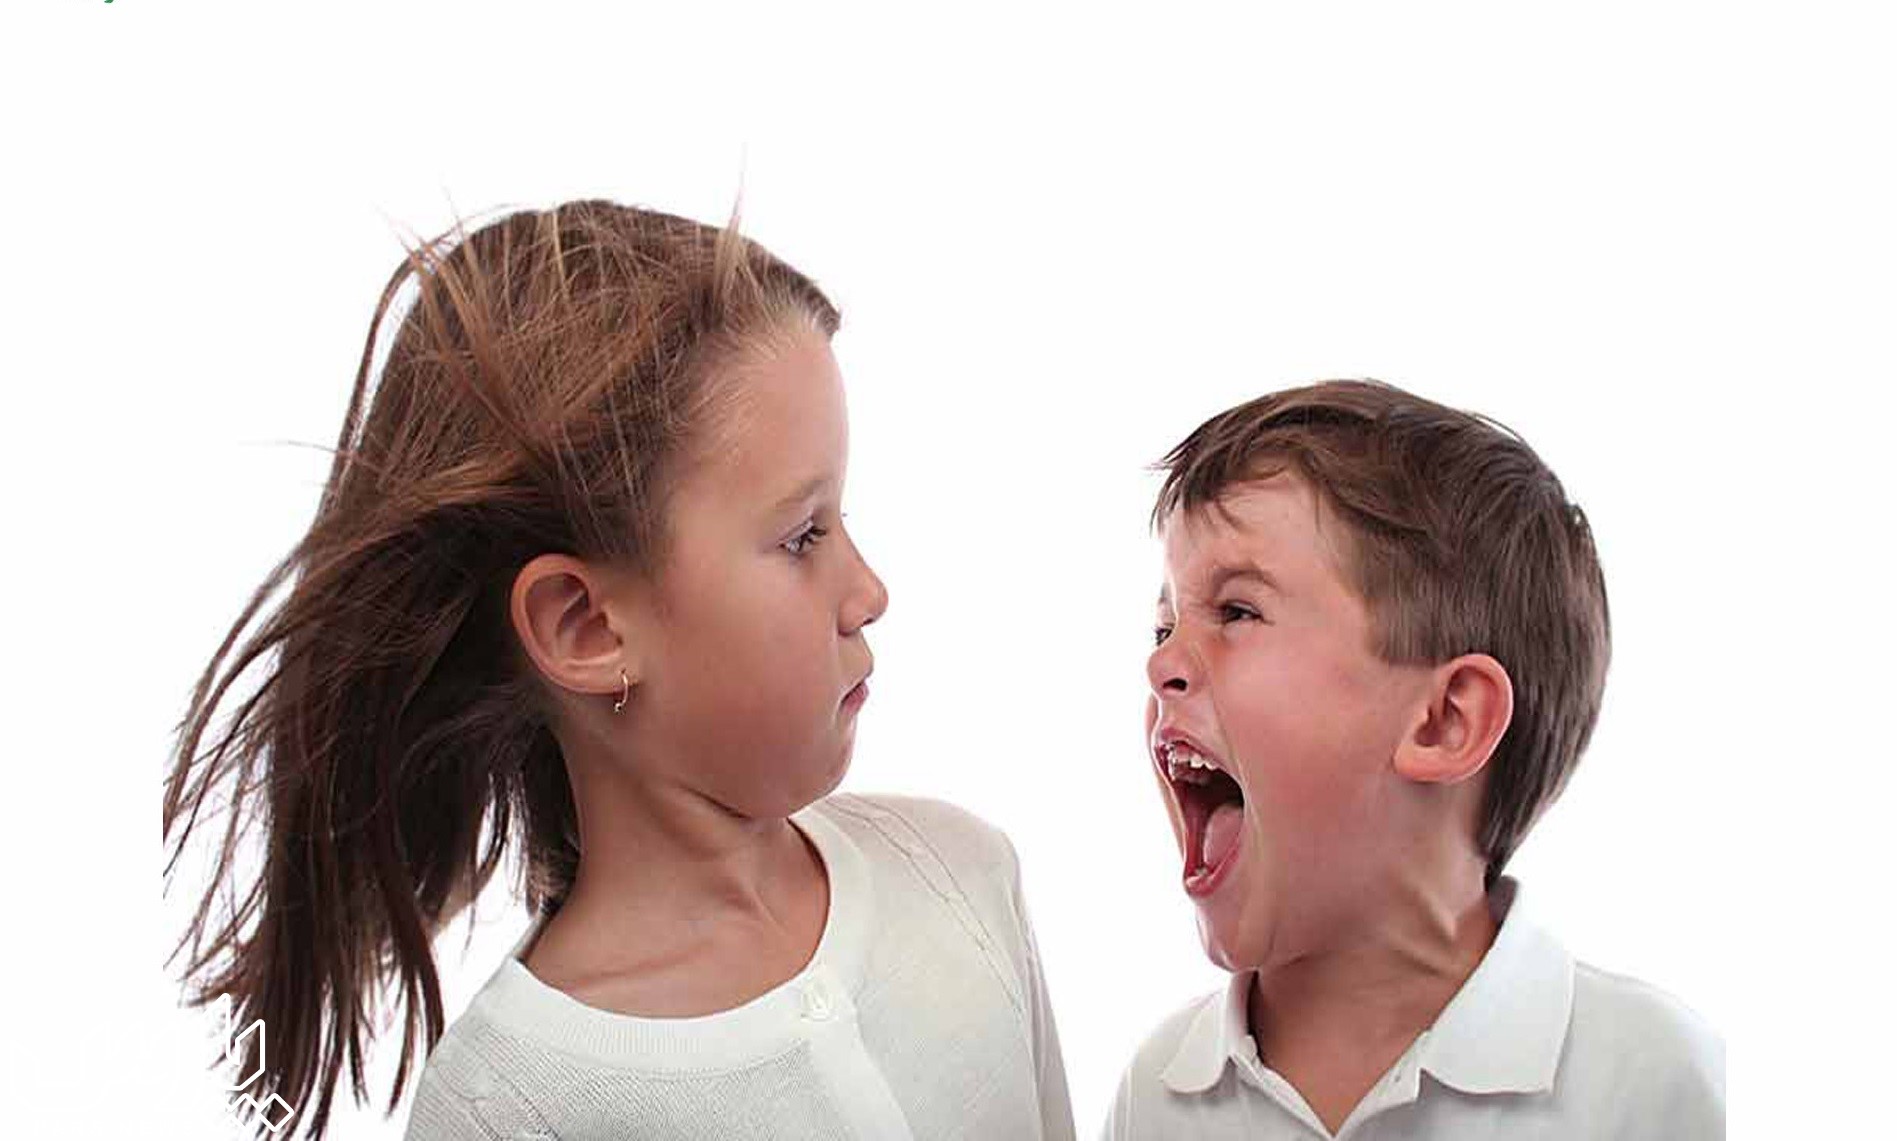 عصبانیت کودک - پرخاشگری کودکان